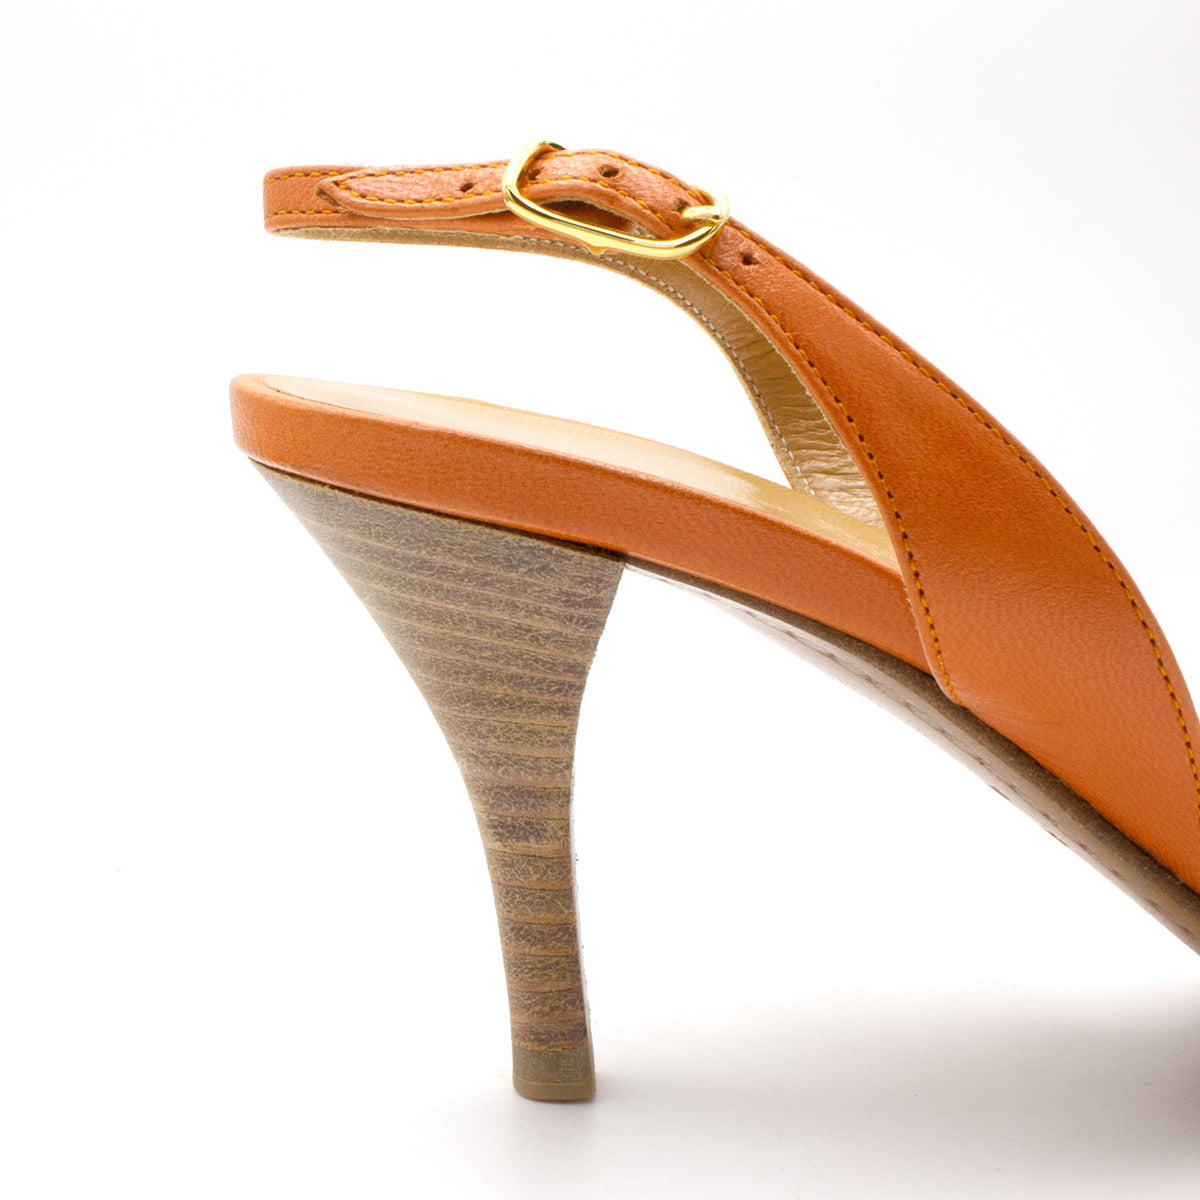 Hermes sandals orange shoes